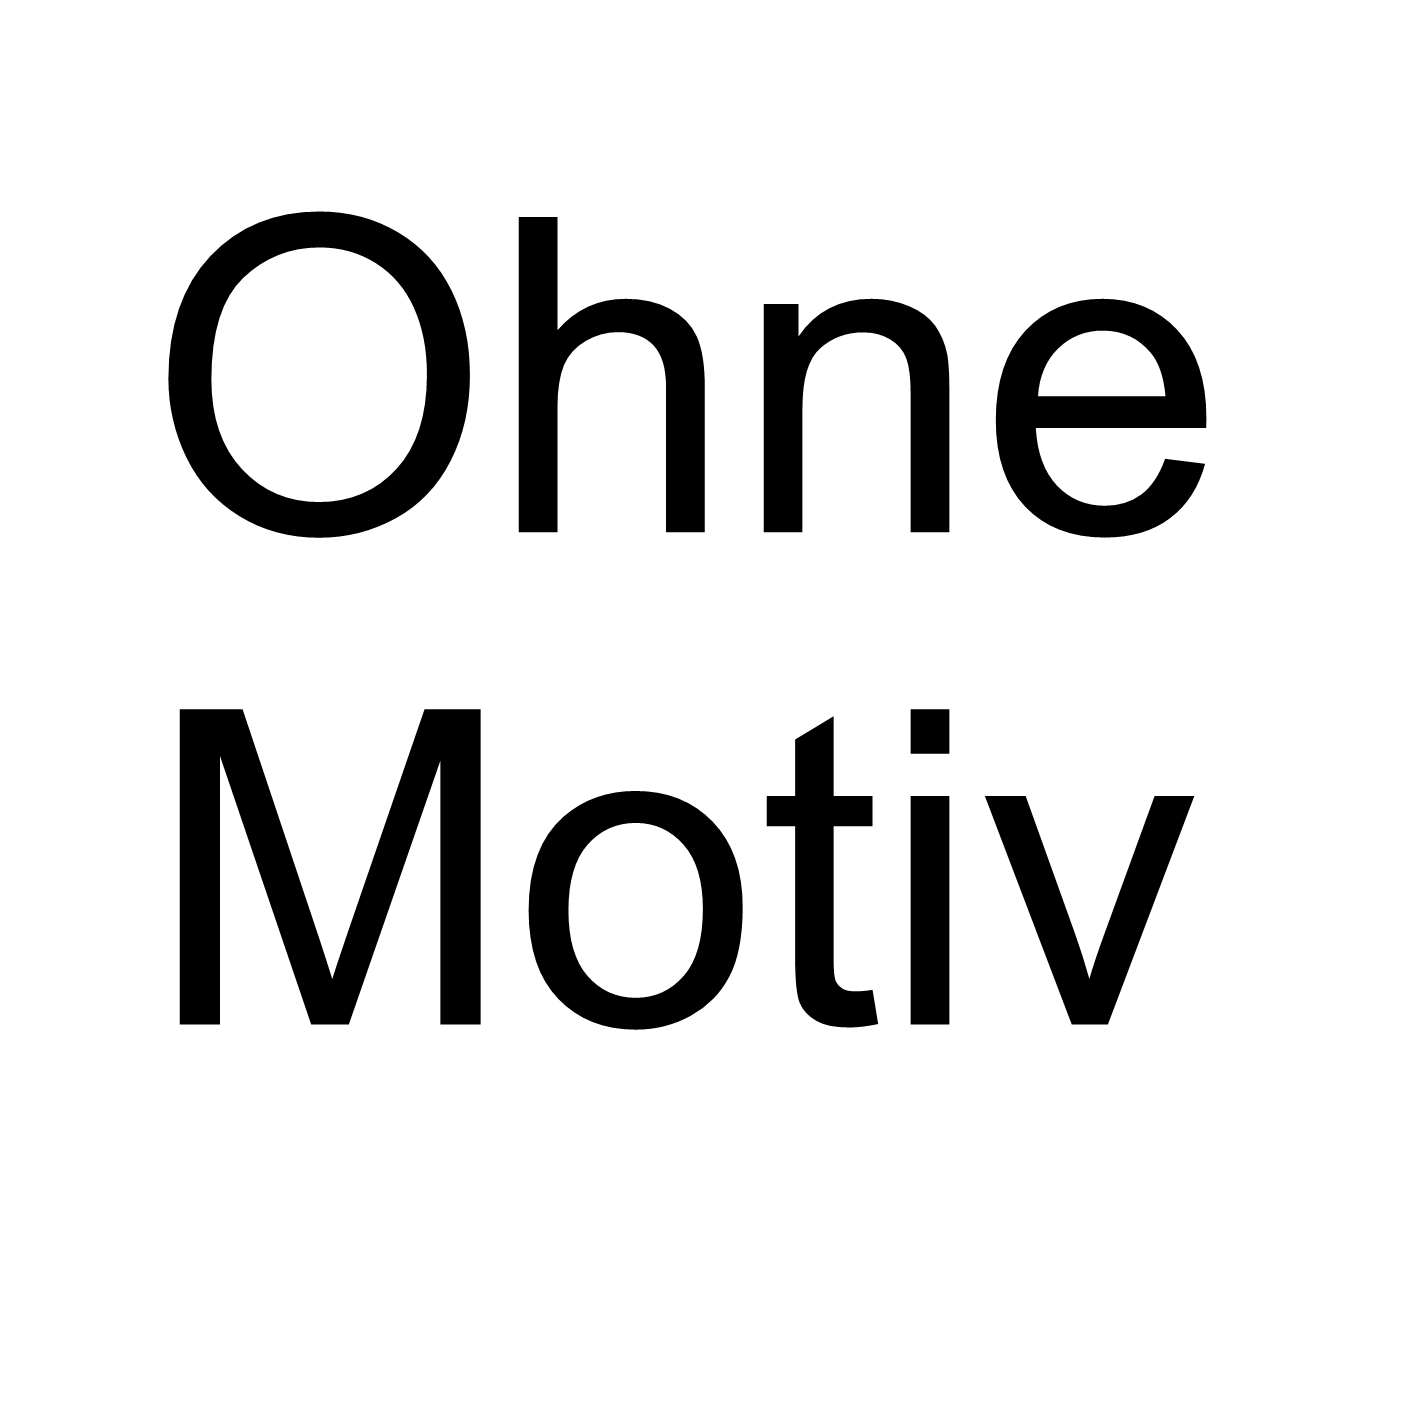 OHNE-MOTIV